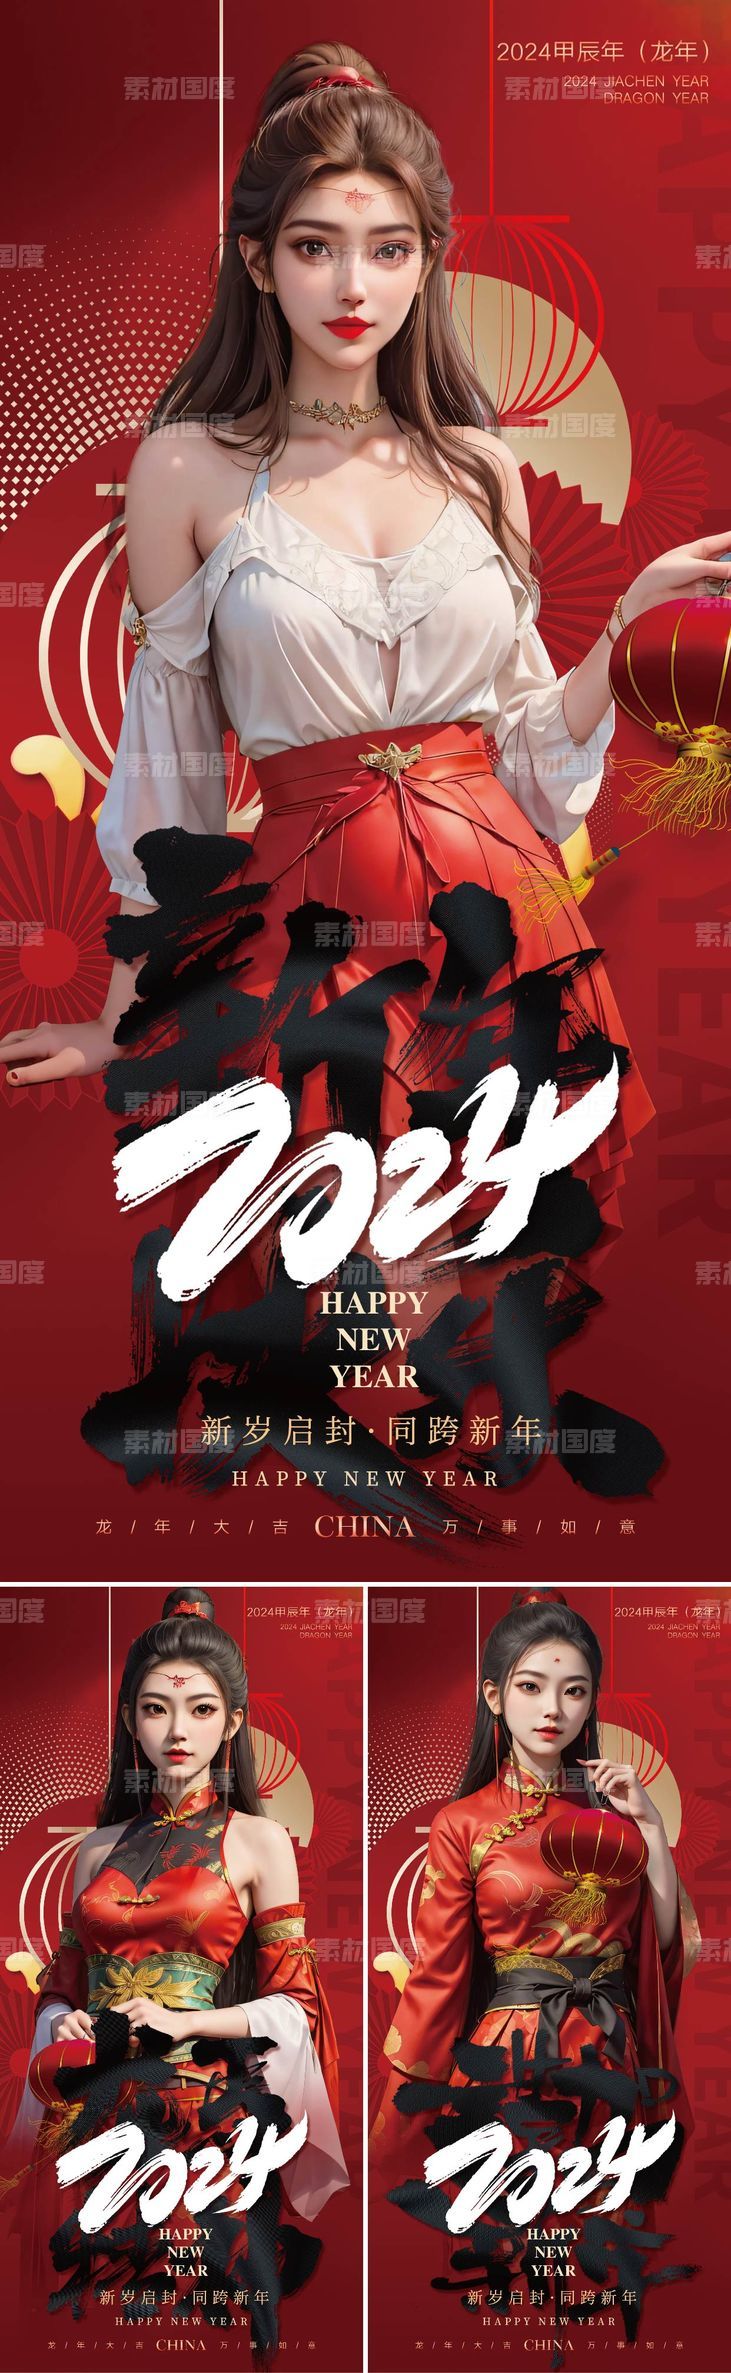 2024新年快乐喜庆海报